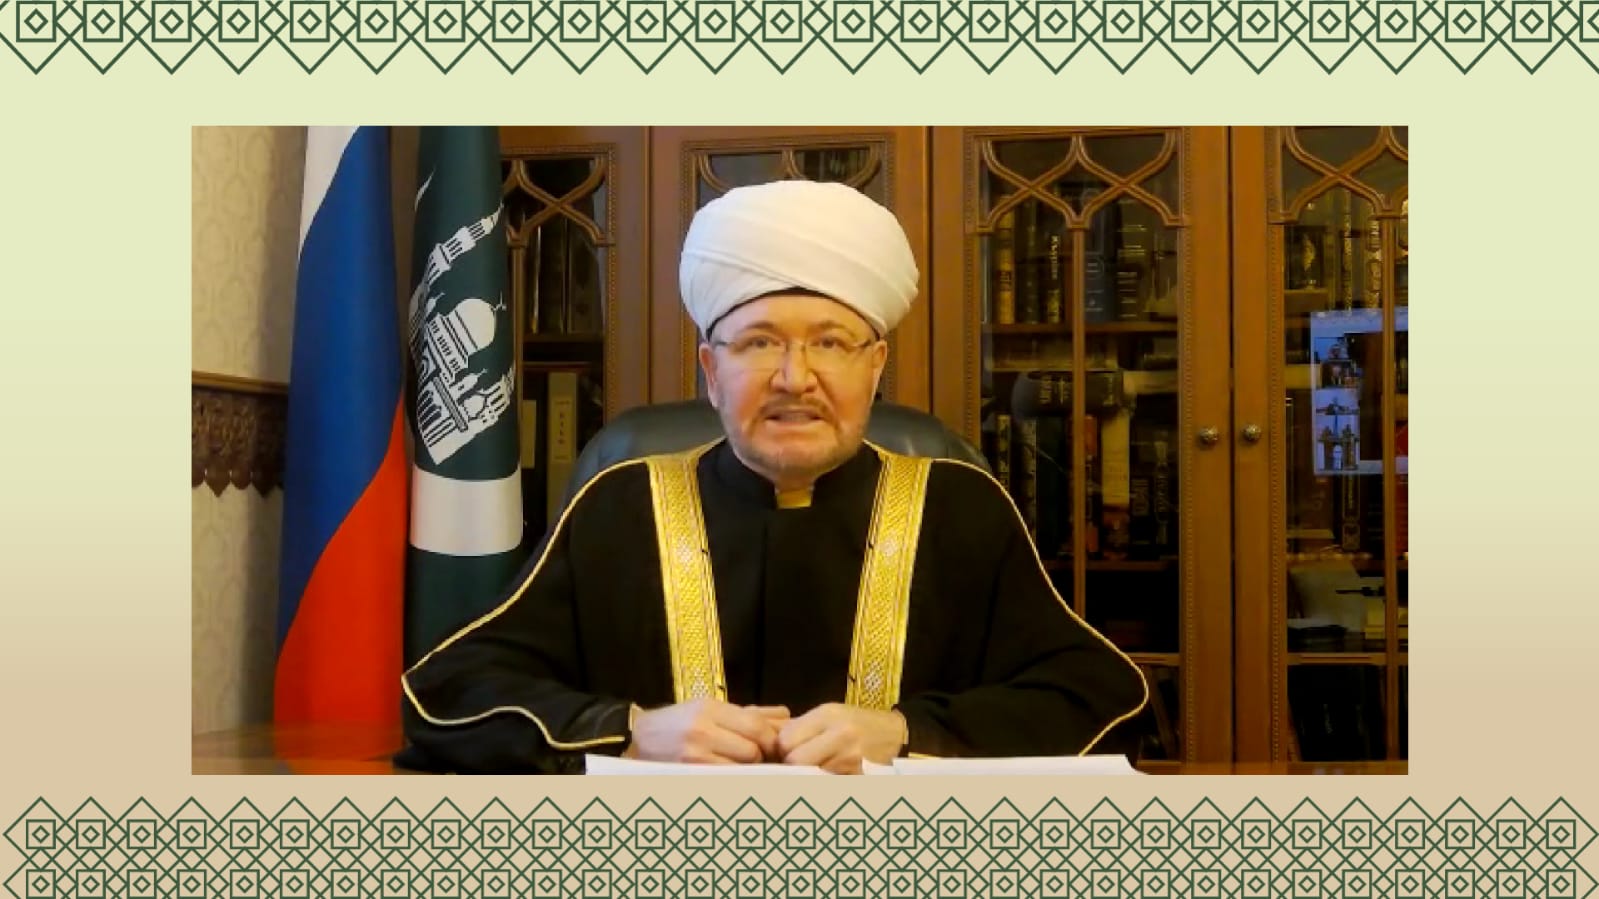 المفتي الشيخ راوي عين الدين رئيس الإدارة الدينية لمسلمي روسيا الاتحادية